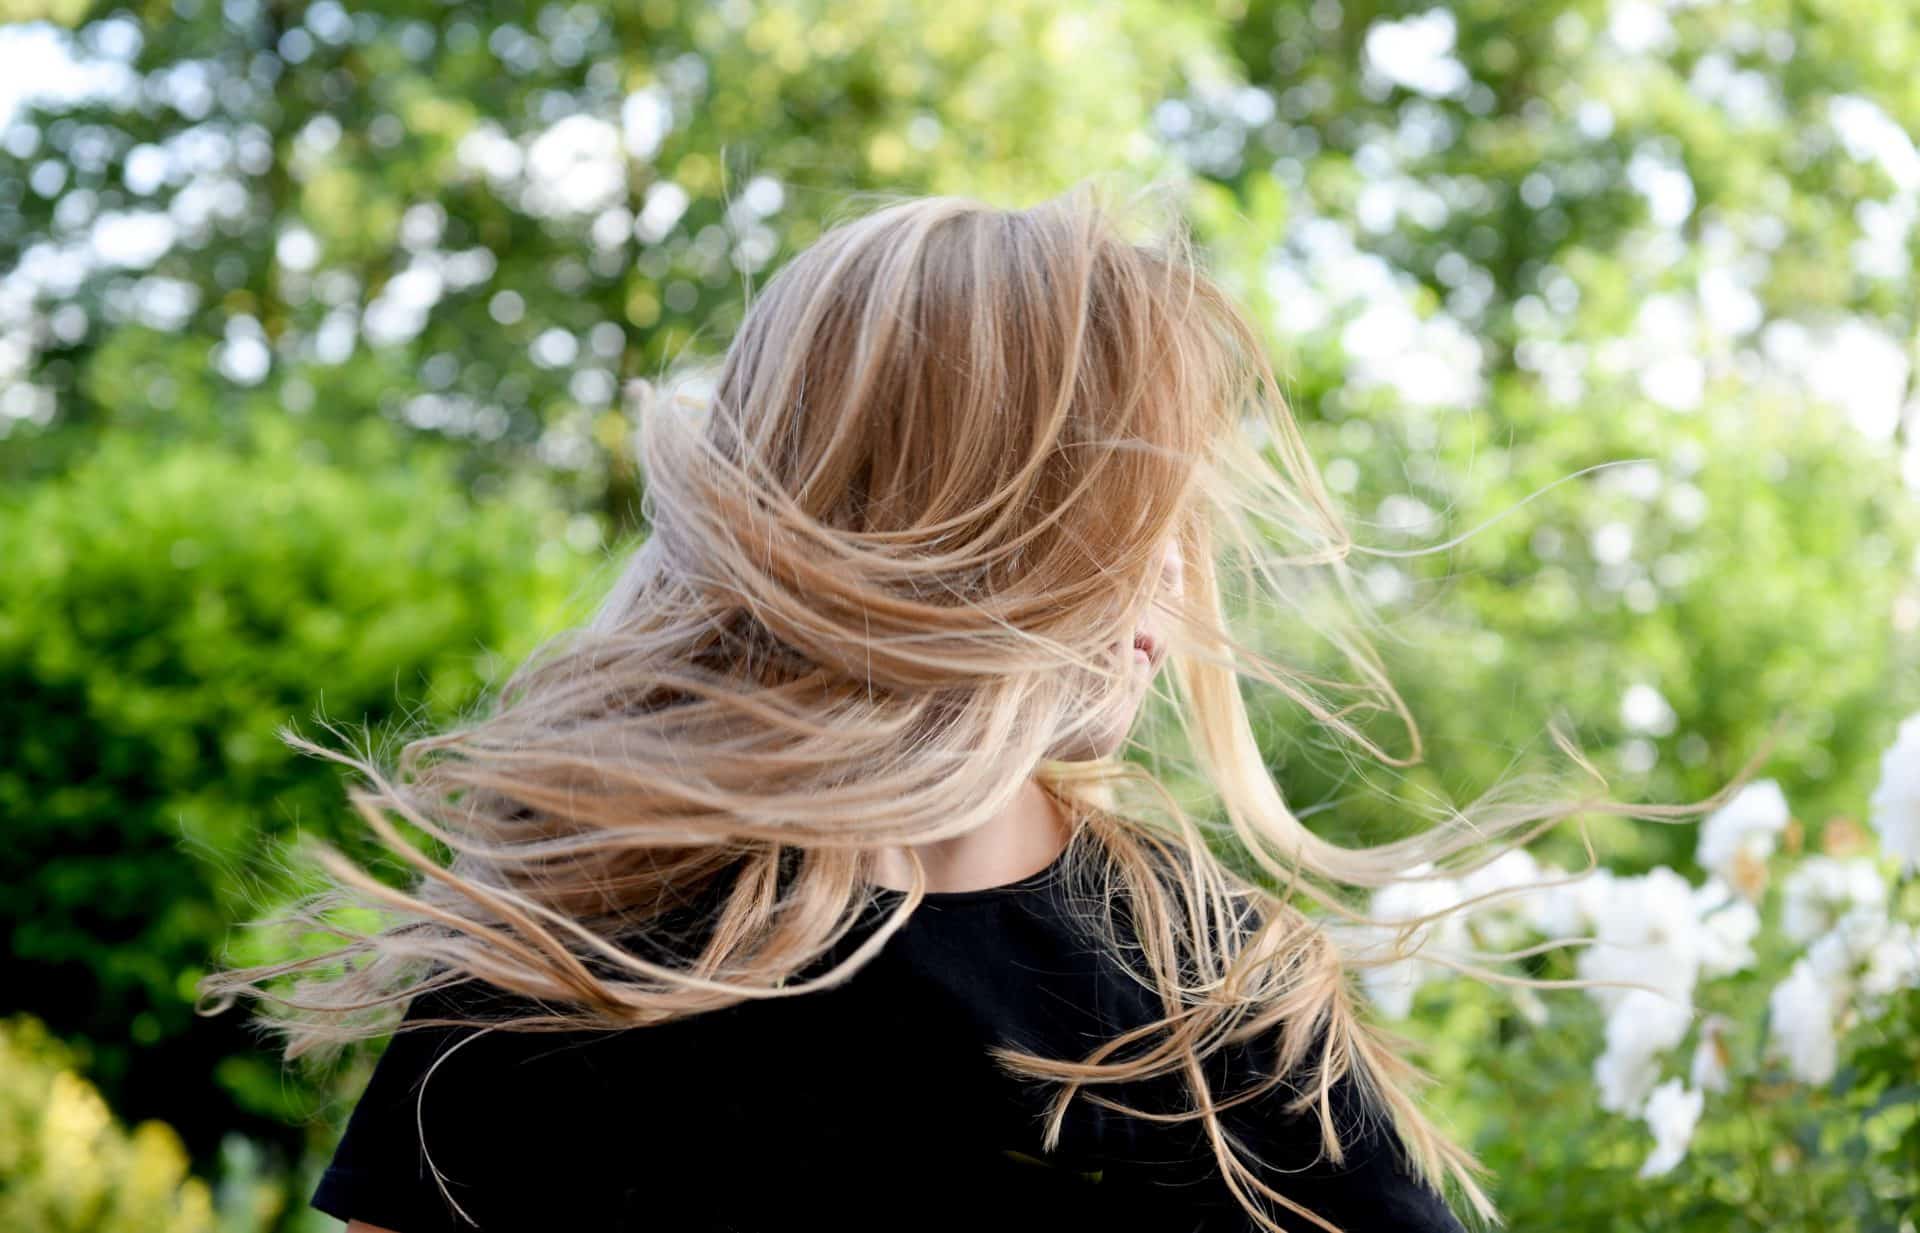 proteinowanie wlosow blog resibo kobieta blond wlosy tylem rozwiane na lonie natury